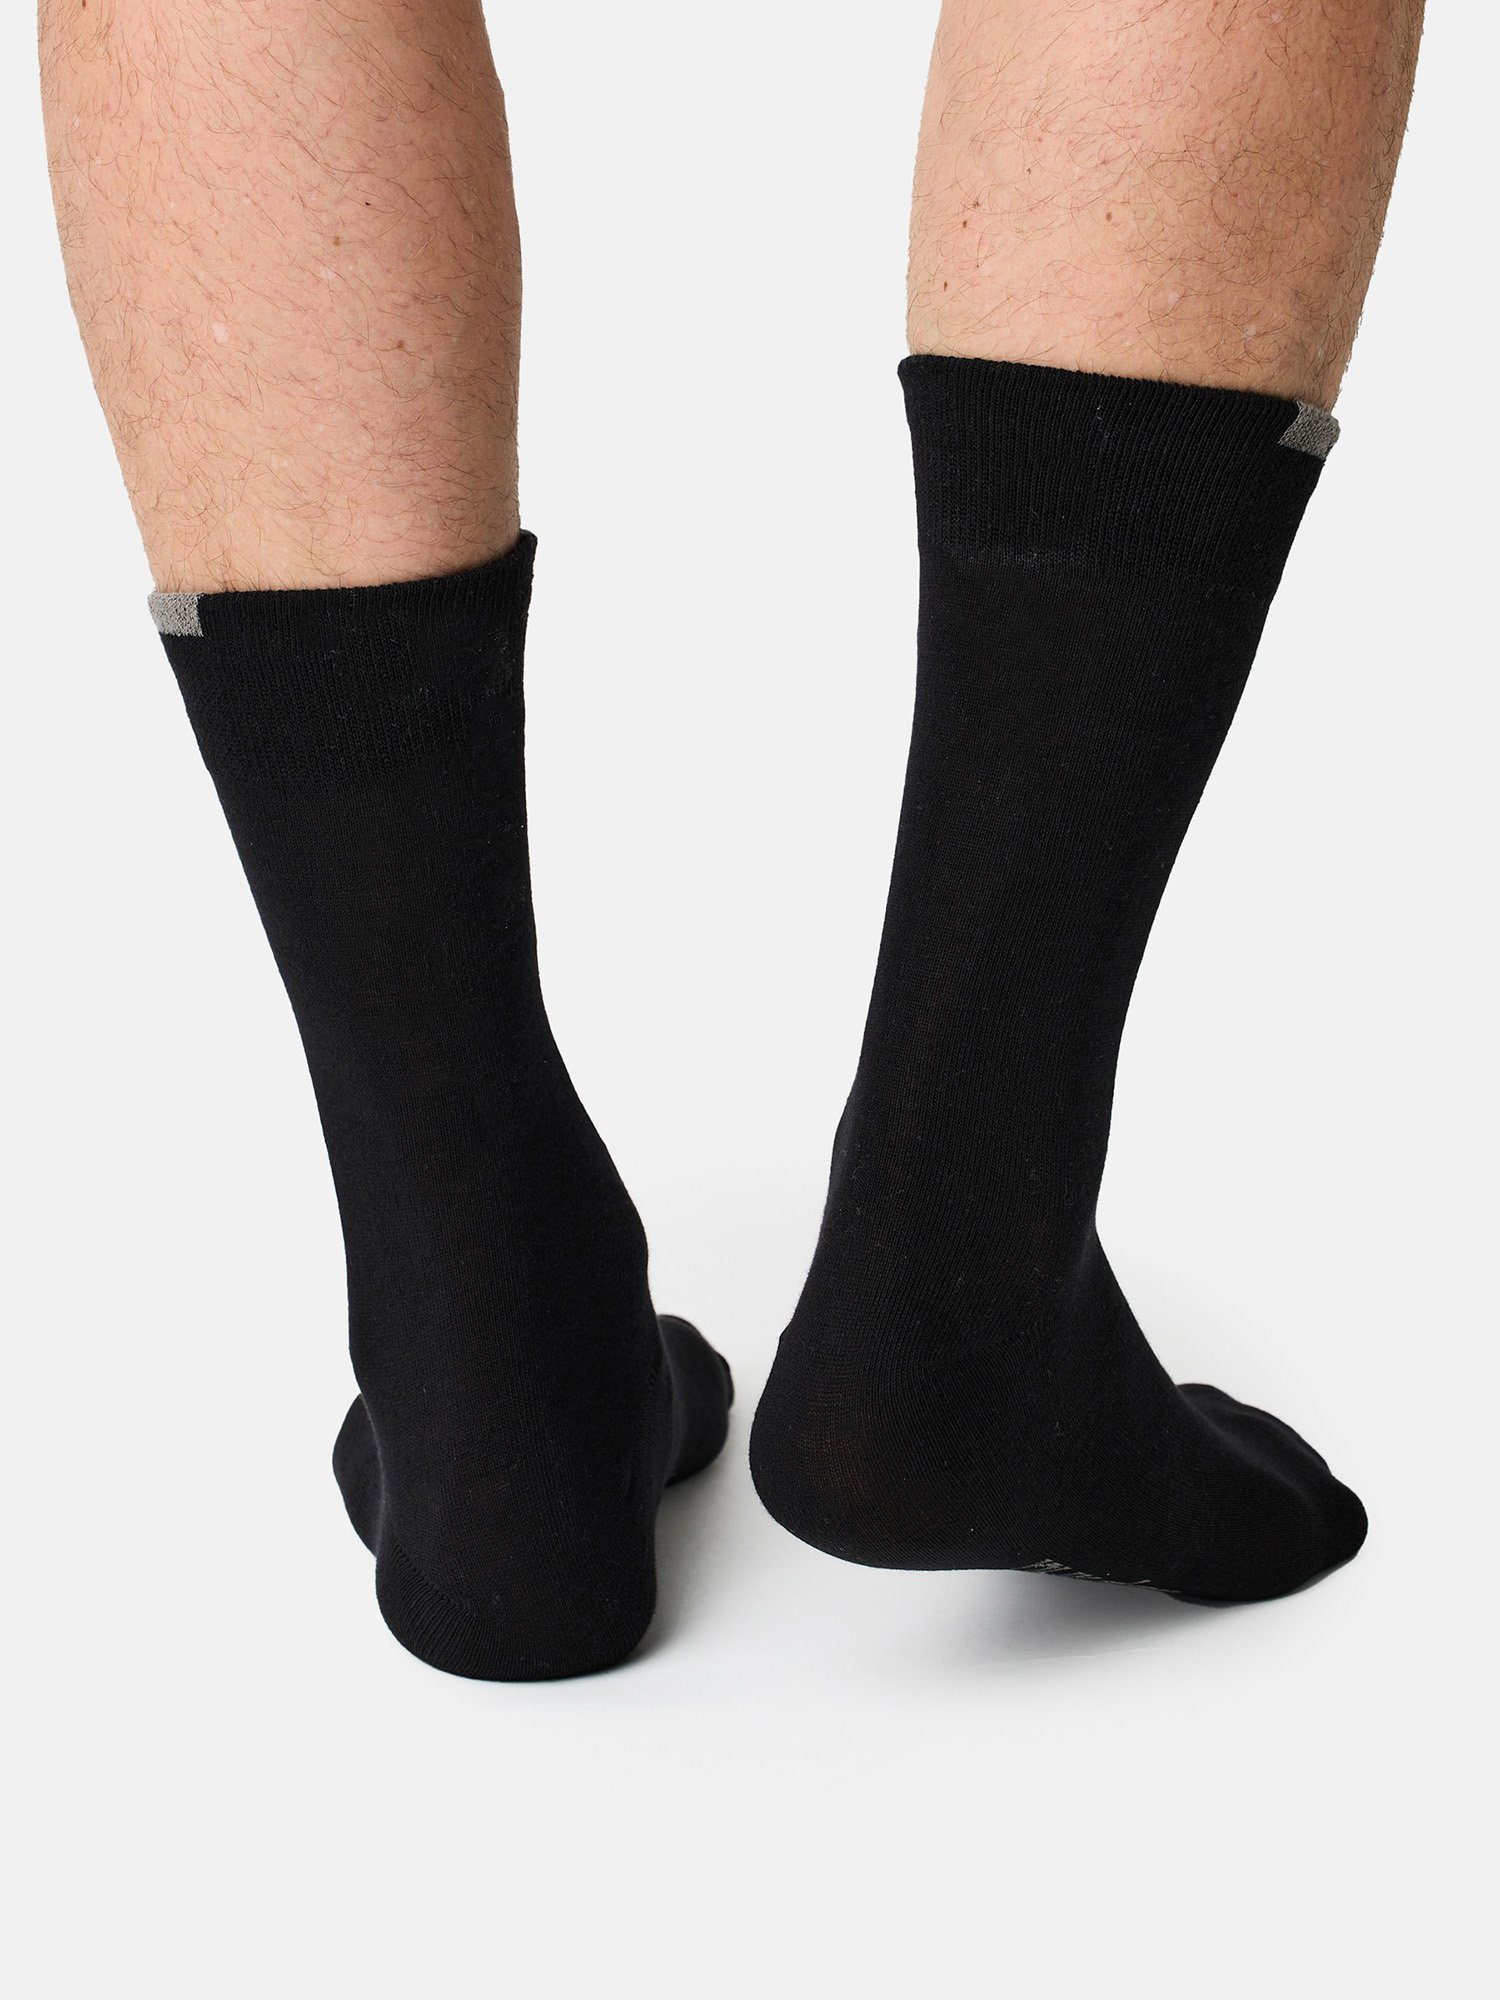 uni (15-Paar) günstig Der Perfekt schwarz Basicsocken Nur Socken Passt